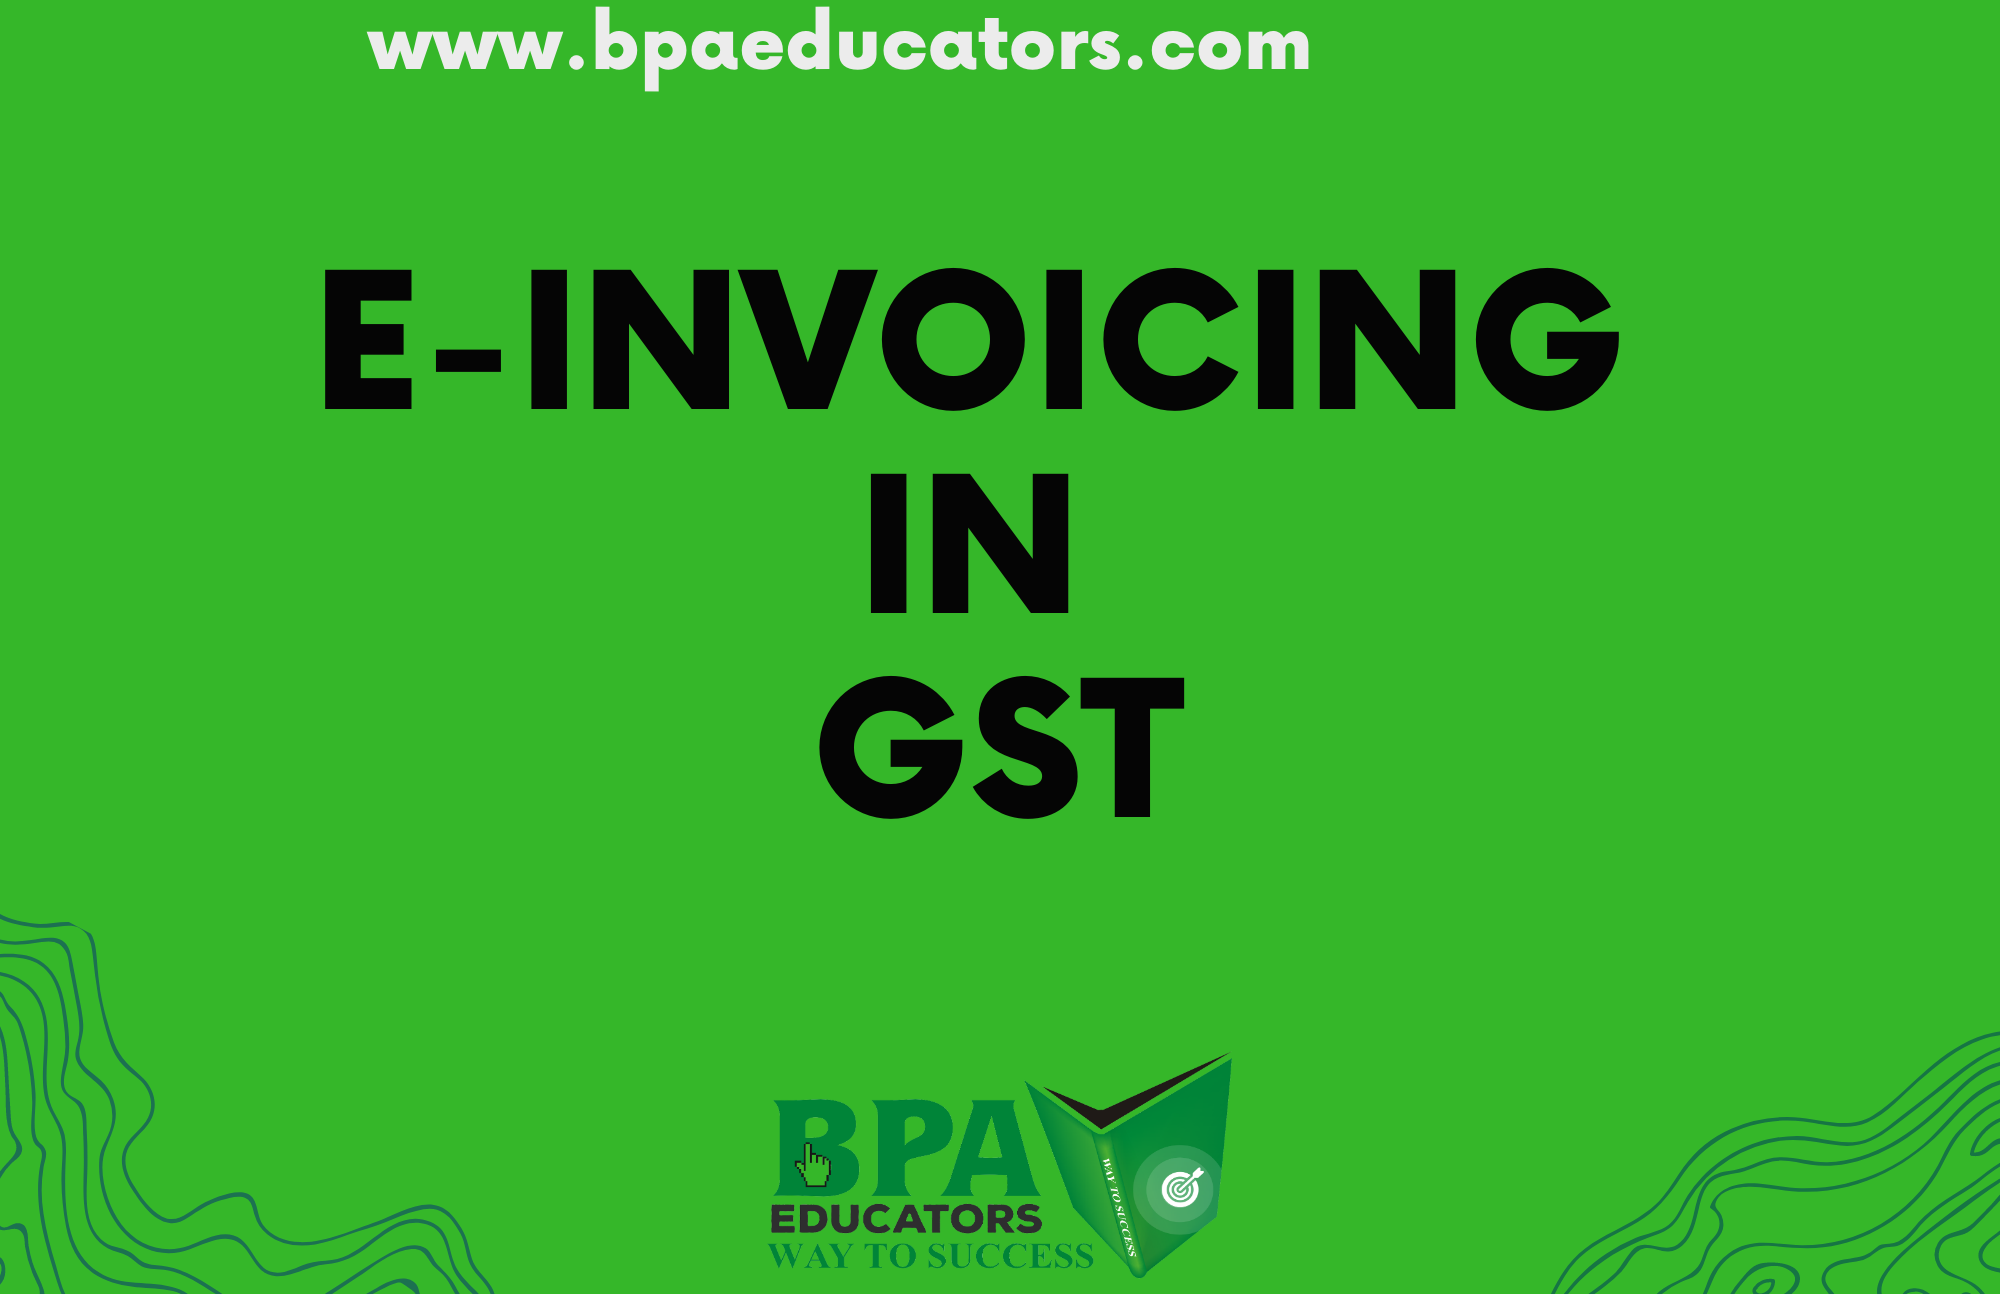 E-Invoicing in GST